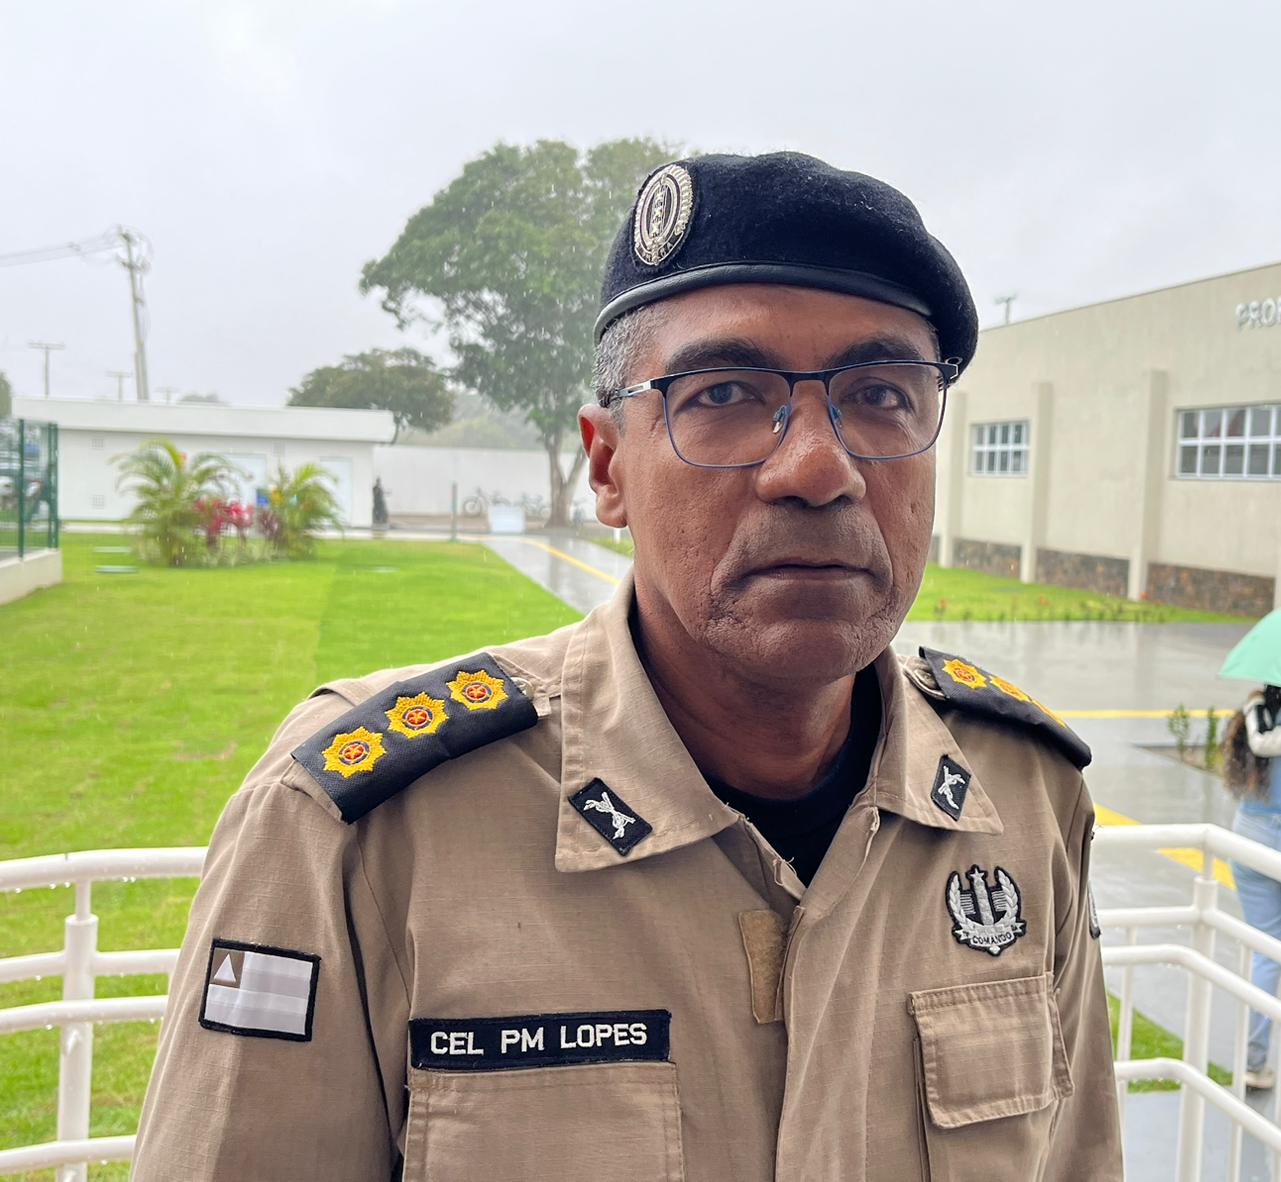 Coronel Lopes reage a pichações criminosas na Kalilândia: “Estamos atentos e atuando”